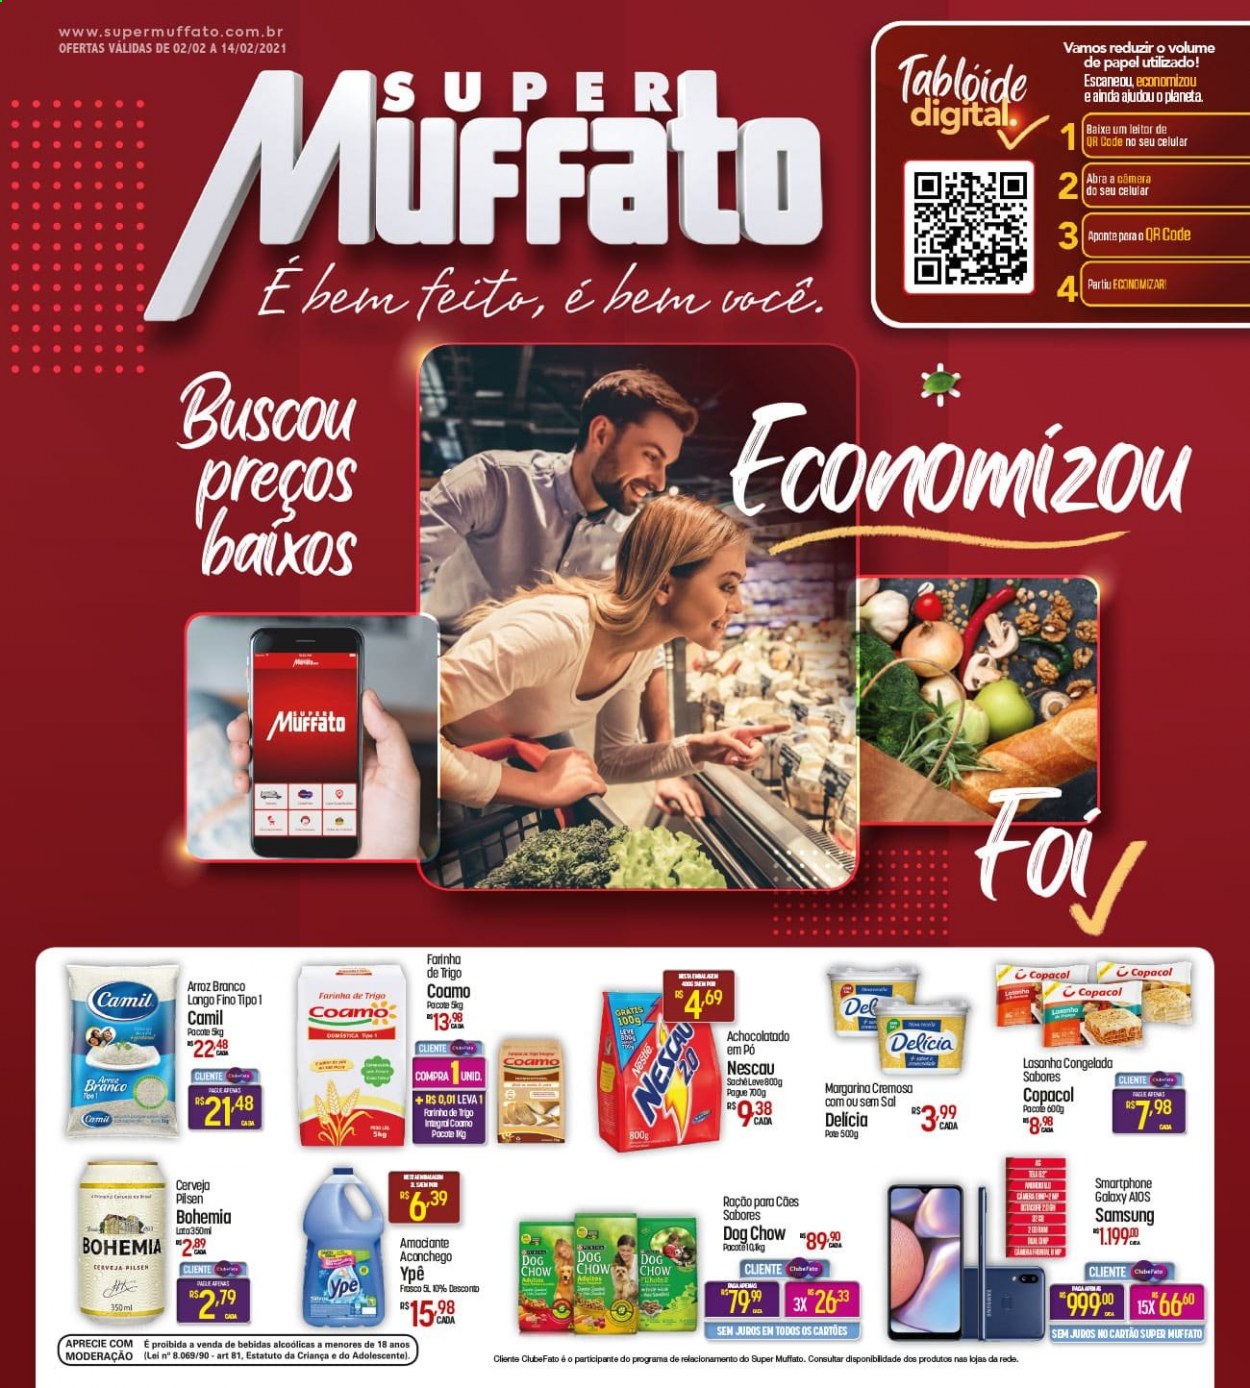 thumbnail - Folheto Super Muffato - 02/02/2021 - 14/02/2021 - Produtos em promoção - Samsung, lasanha, margarina, farinha, farinha de trigo, arroz, arroz branco, Nescau, Ypê. Página 1.